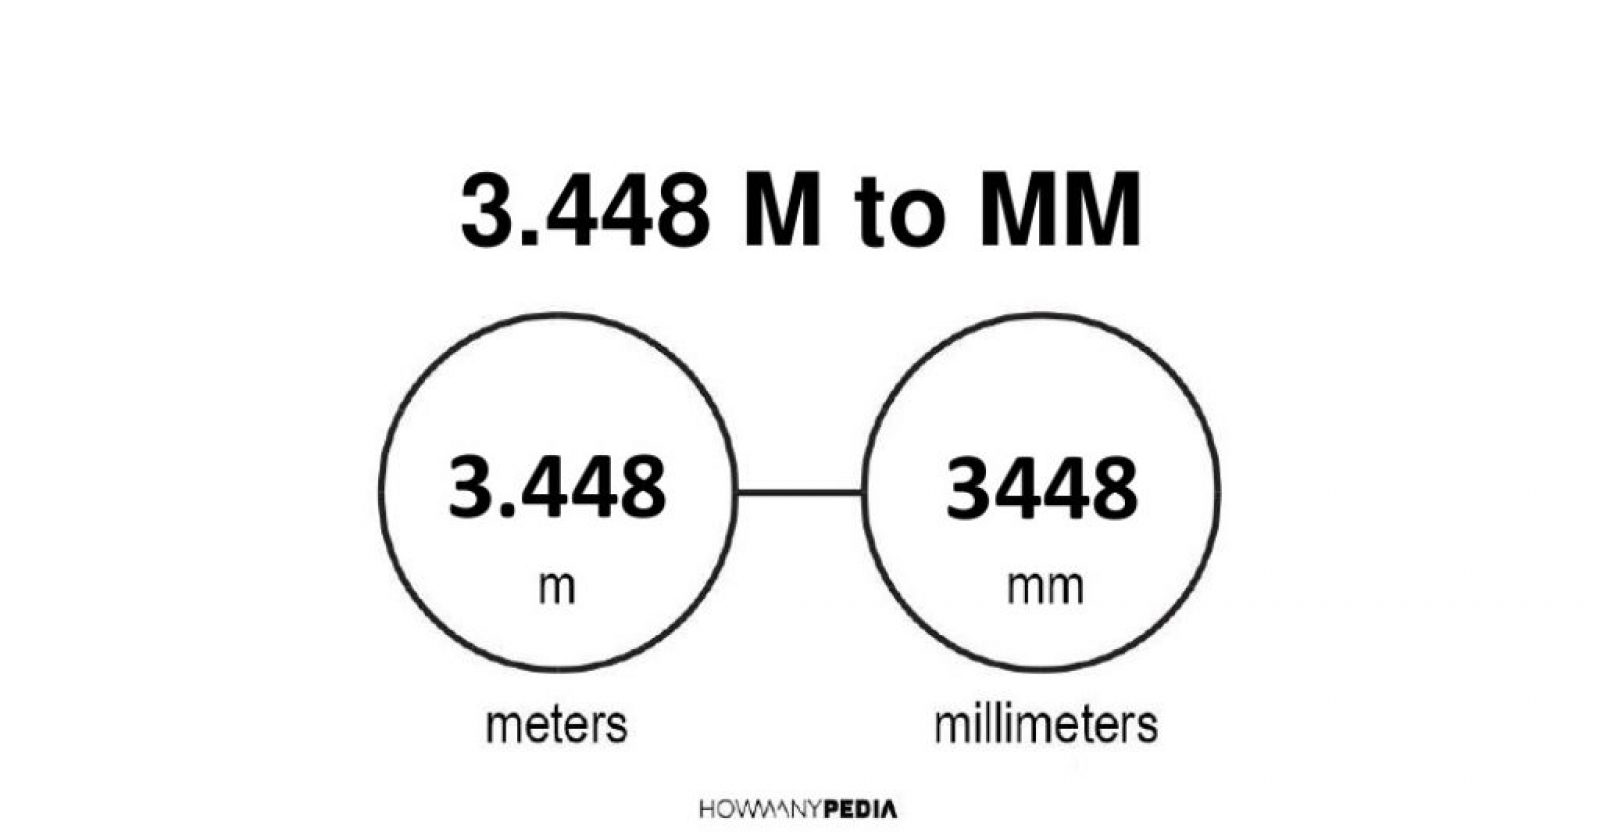 3.448 m to mm - Howmanypedia.com